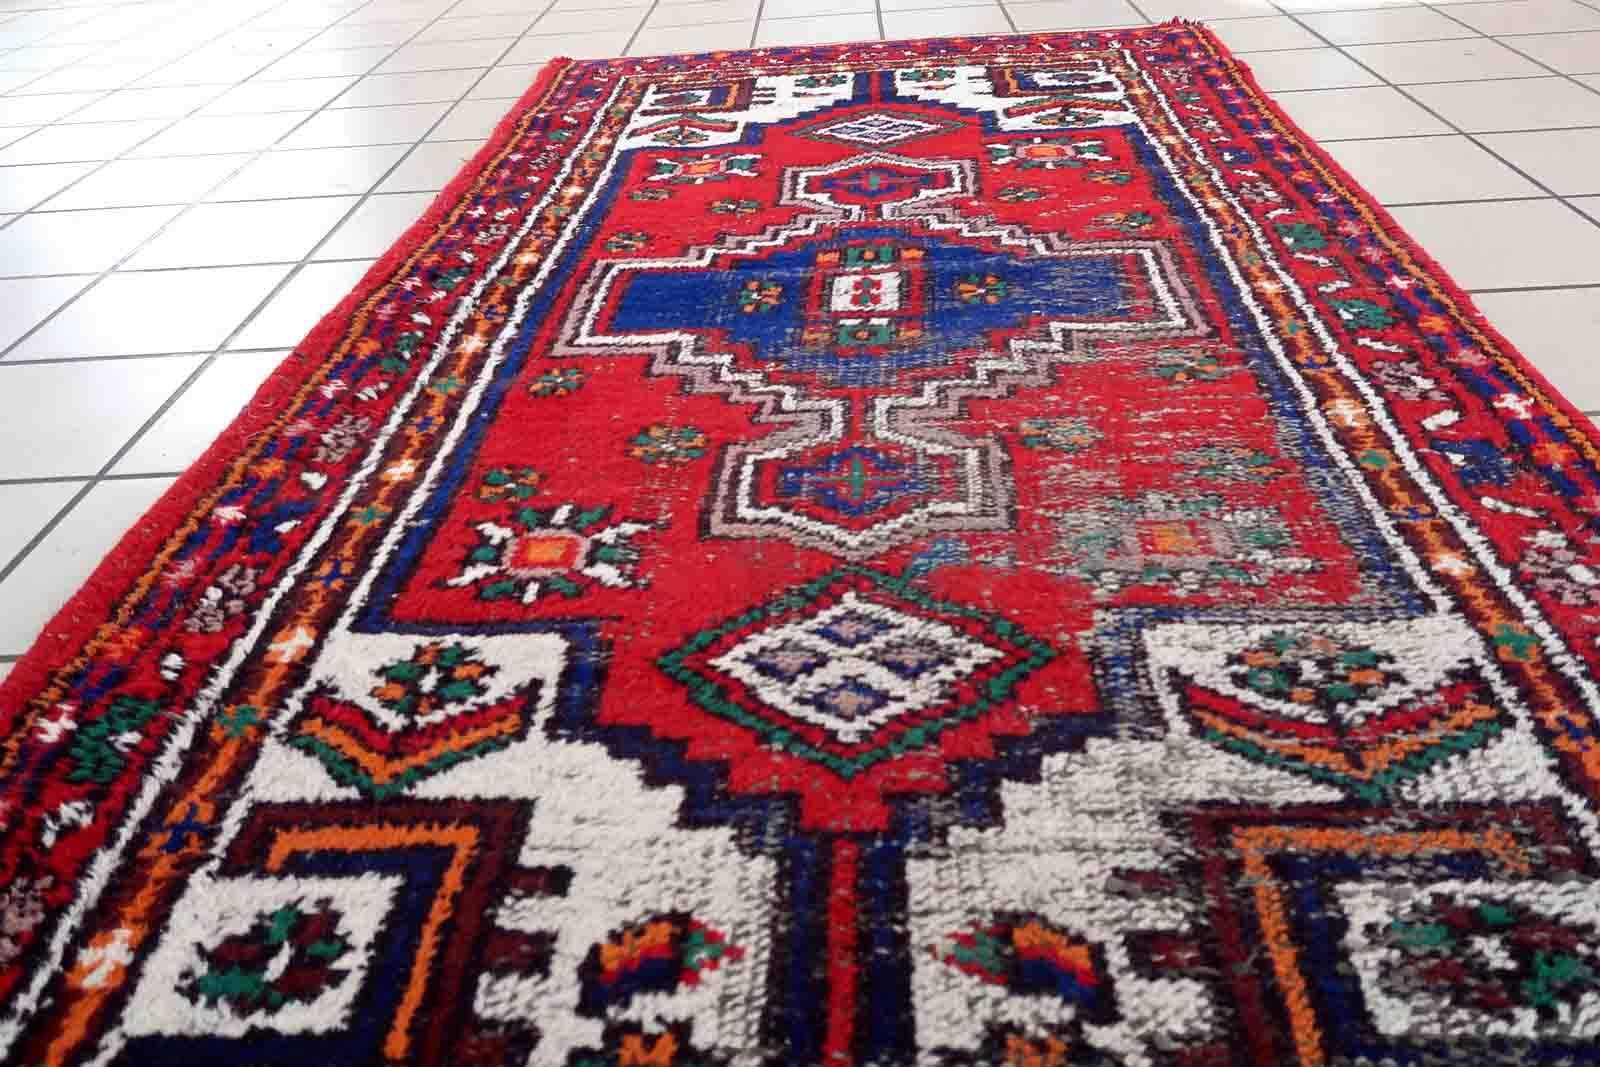 Handgefertigter Vintage-Hamadan-Teppich in leuchtenden Farben. Der Teppich stammt aus dem Ende des 20. Jahrhunderts und ist in schlechtem Zustand.

-Zustand: notleidend,

-Umgebung: 1970er Jahre,

-Größe: 3' x 6' (93cm x 183cm),

-MATERIAL: